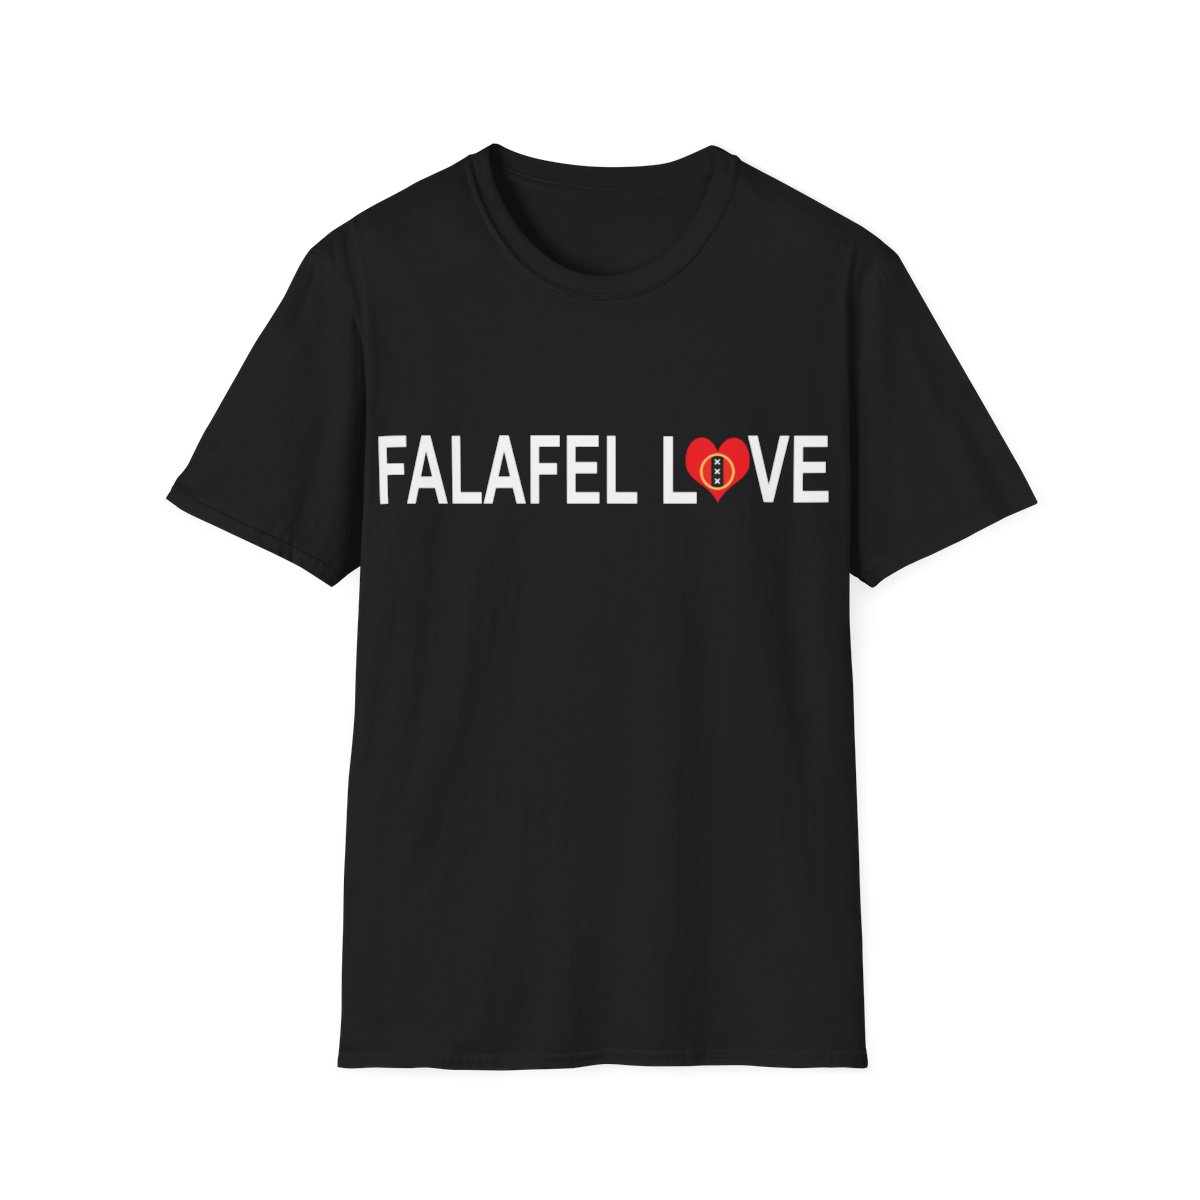 "Falafel Love" Unisex Softstyle T-Shirt product thumbnail image